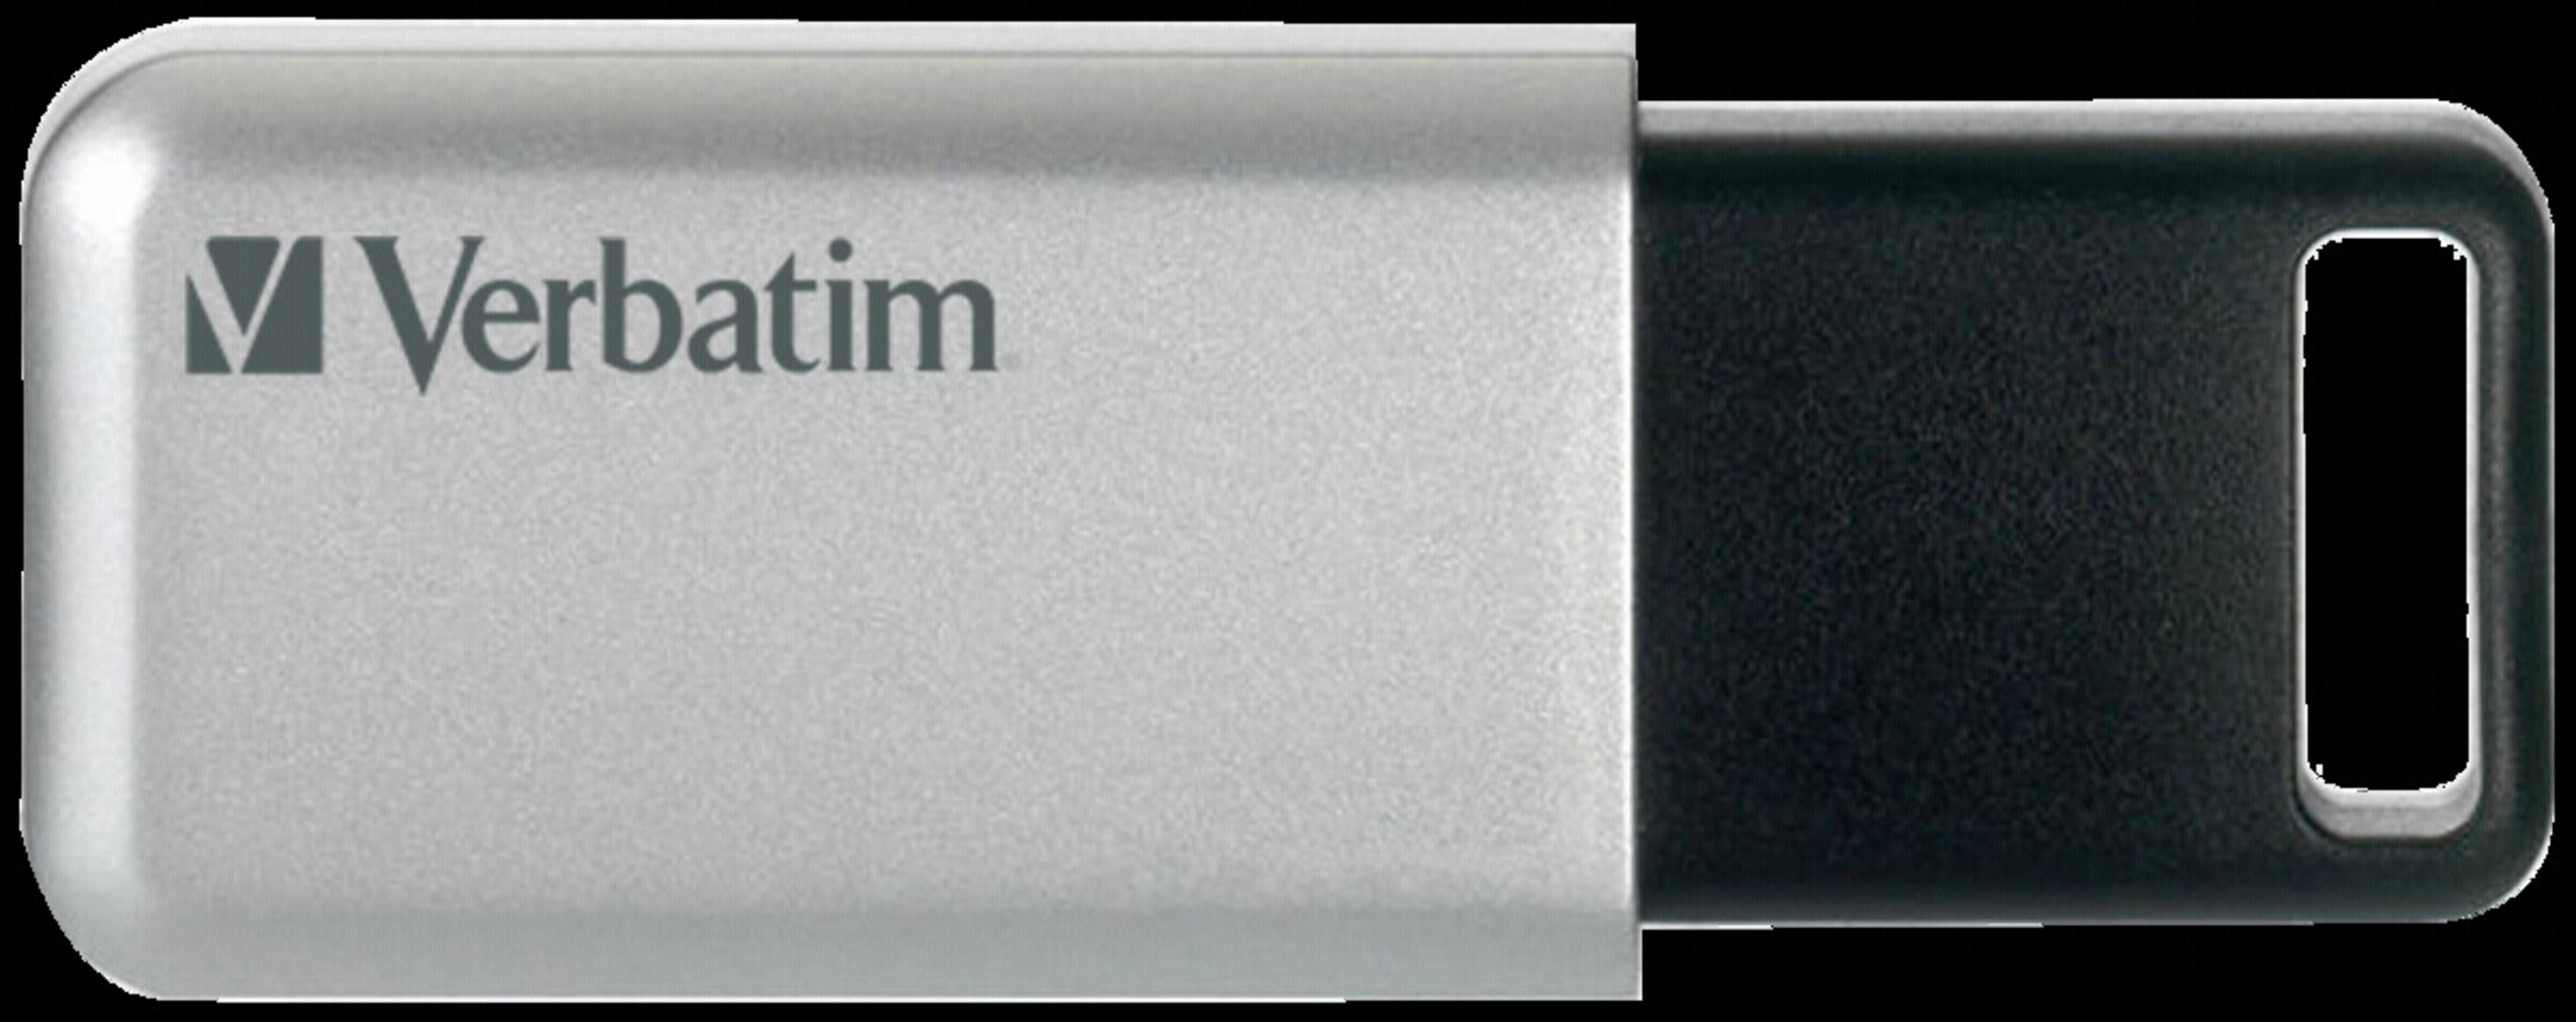 VERBATIM 98665 32GB SECURE USB 3.0 (Silber/Schwarz, PRO 32 GB) USB-Stick